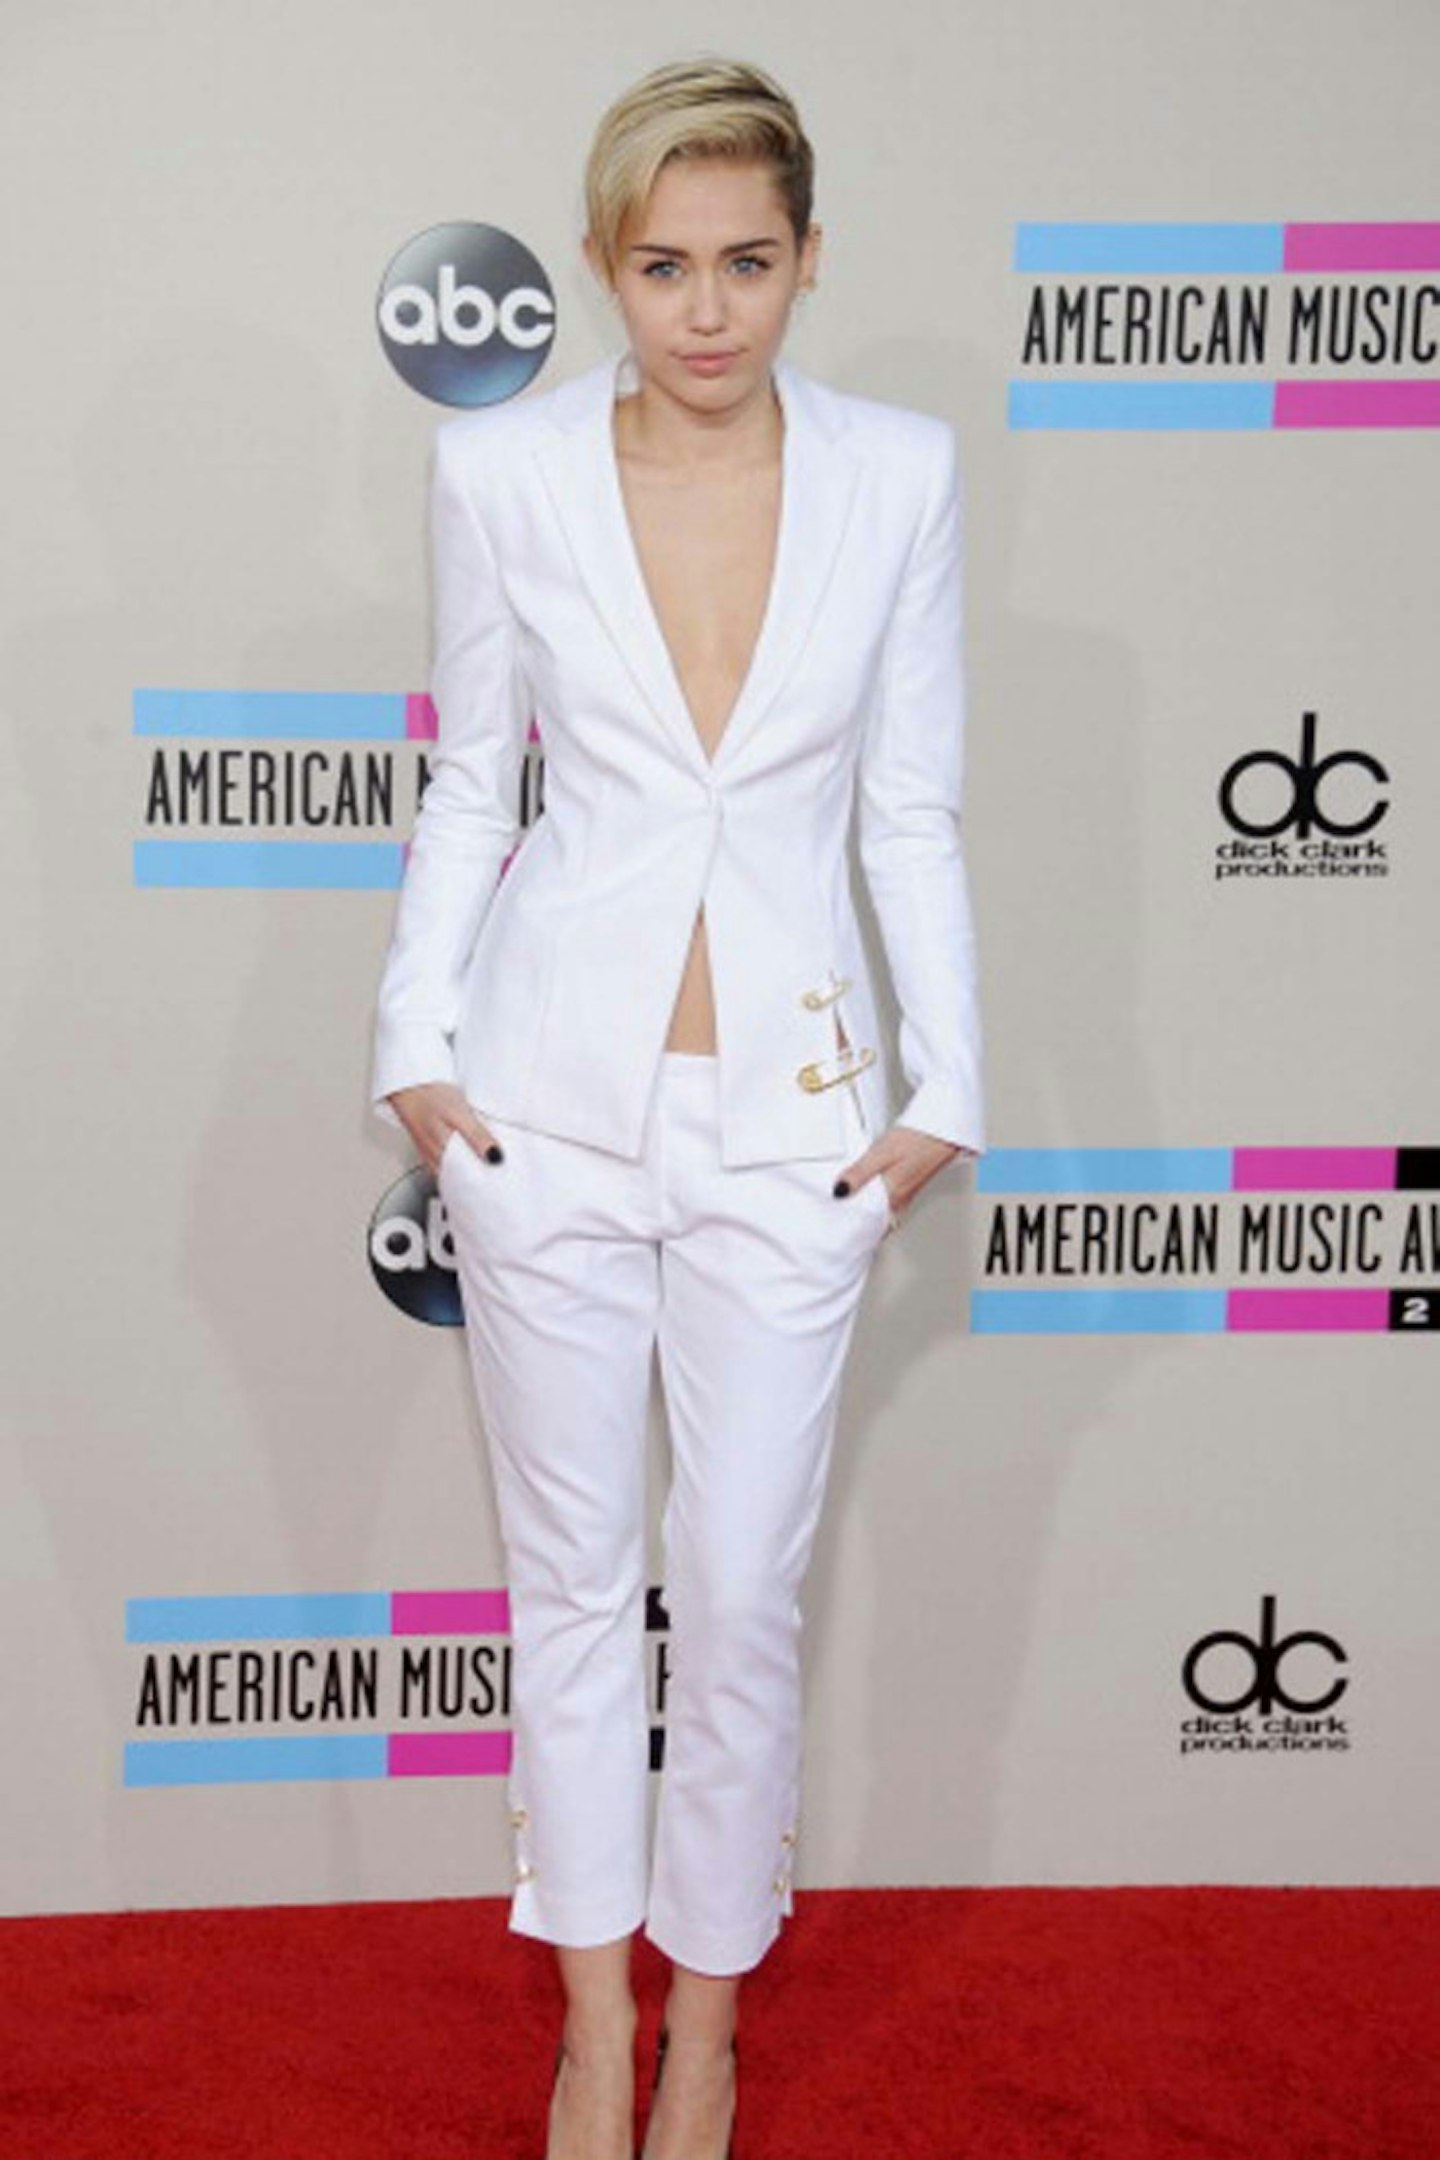 Miley Cyrus at the 2013 American Music Awards - November 24, 2013